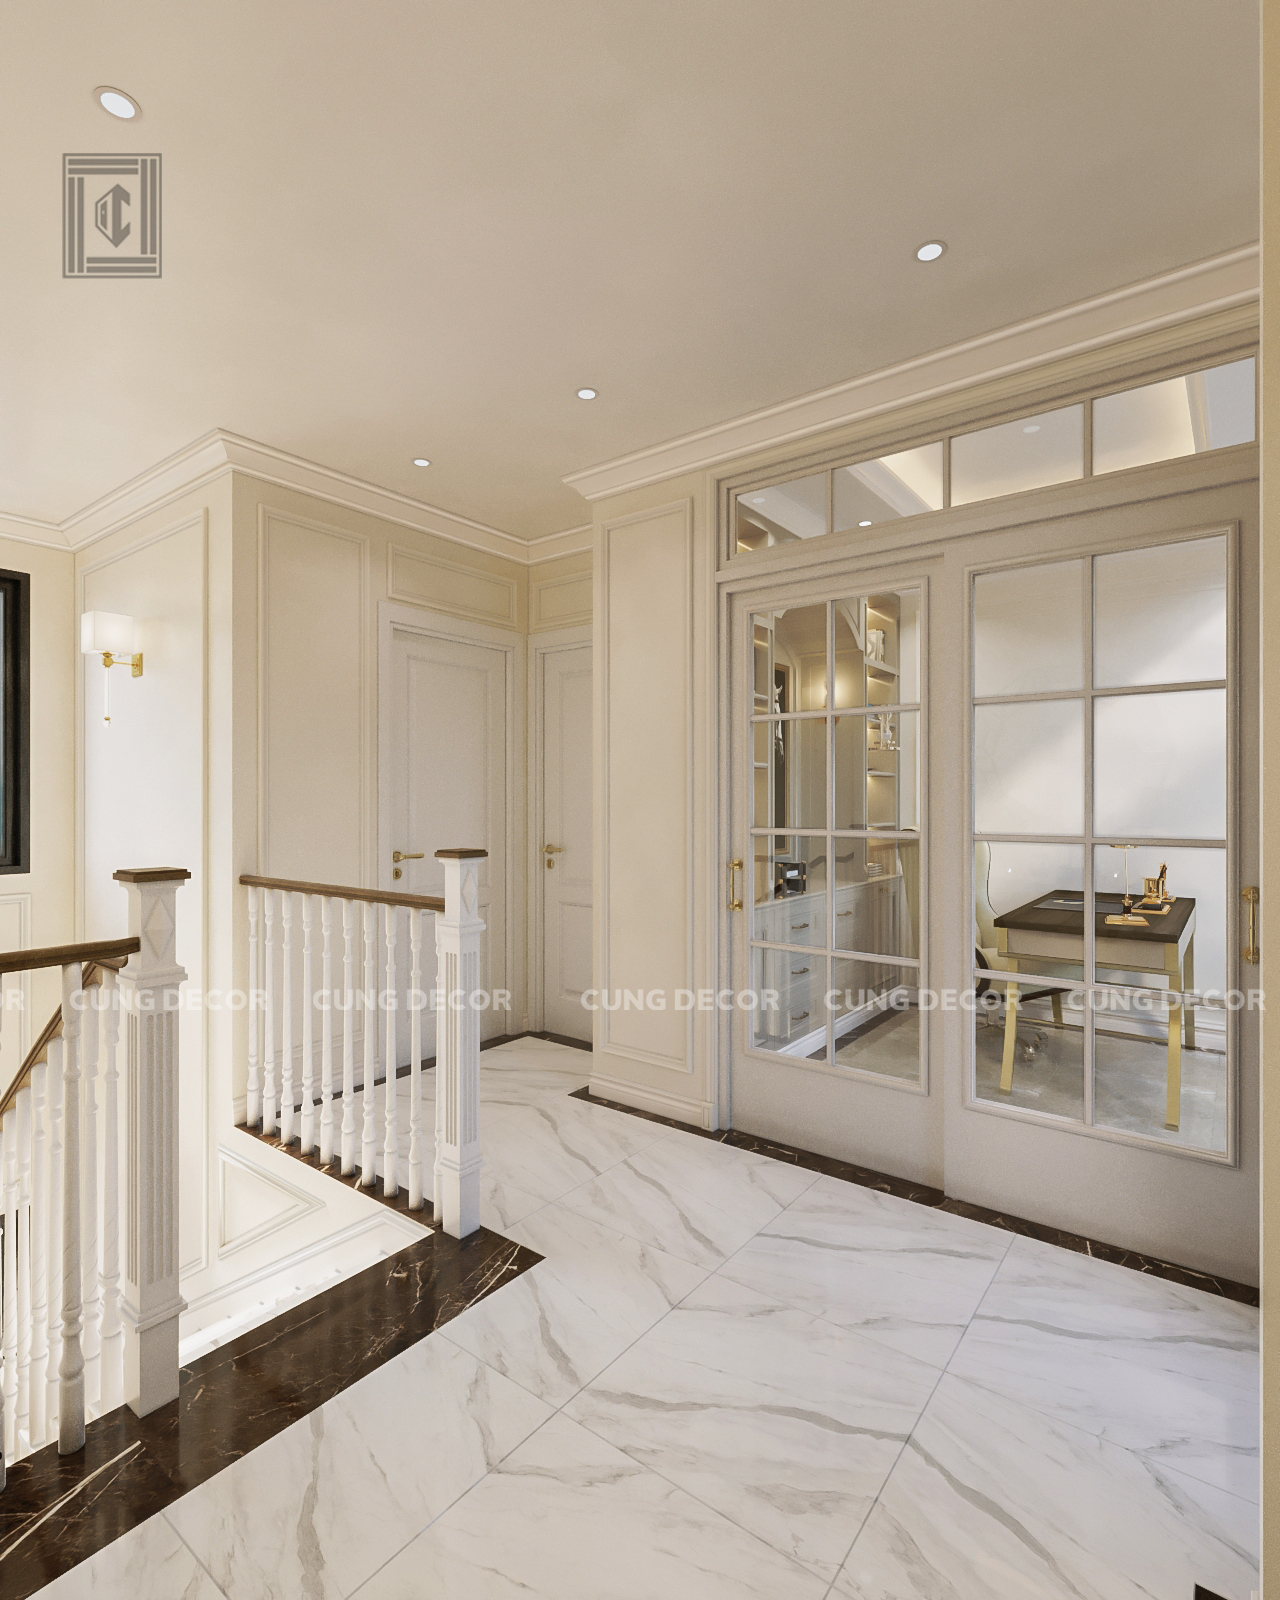 Thiết kế concept nội thất khu vực cầu thang Nhà phố Hà Đô Quận 10 phong cách Bán cổ điển